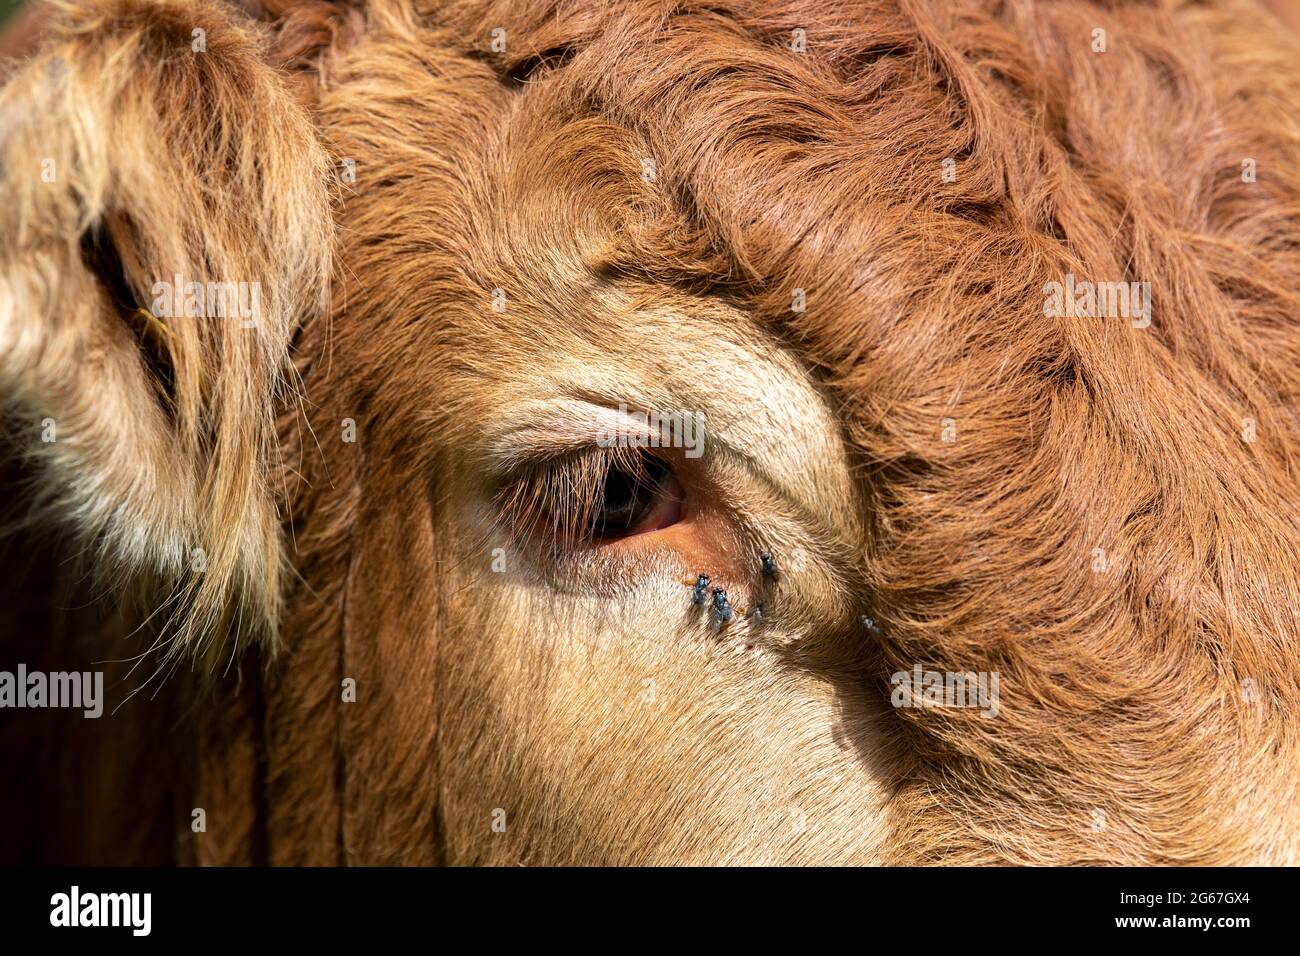 Les mouches se rassemblent autour de l'œil d'une vache, alimentant ses gouttes lacrymogènes. Banque D'Images